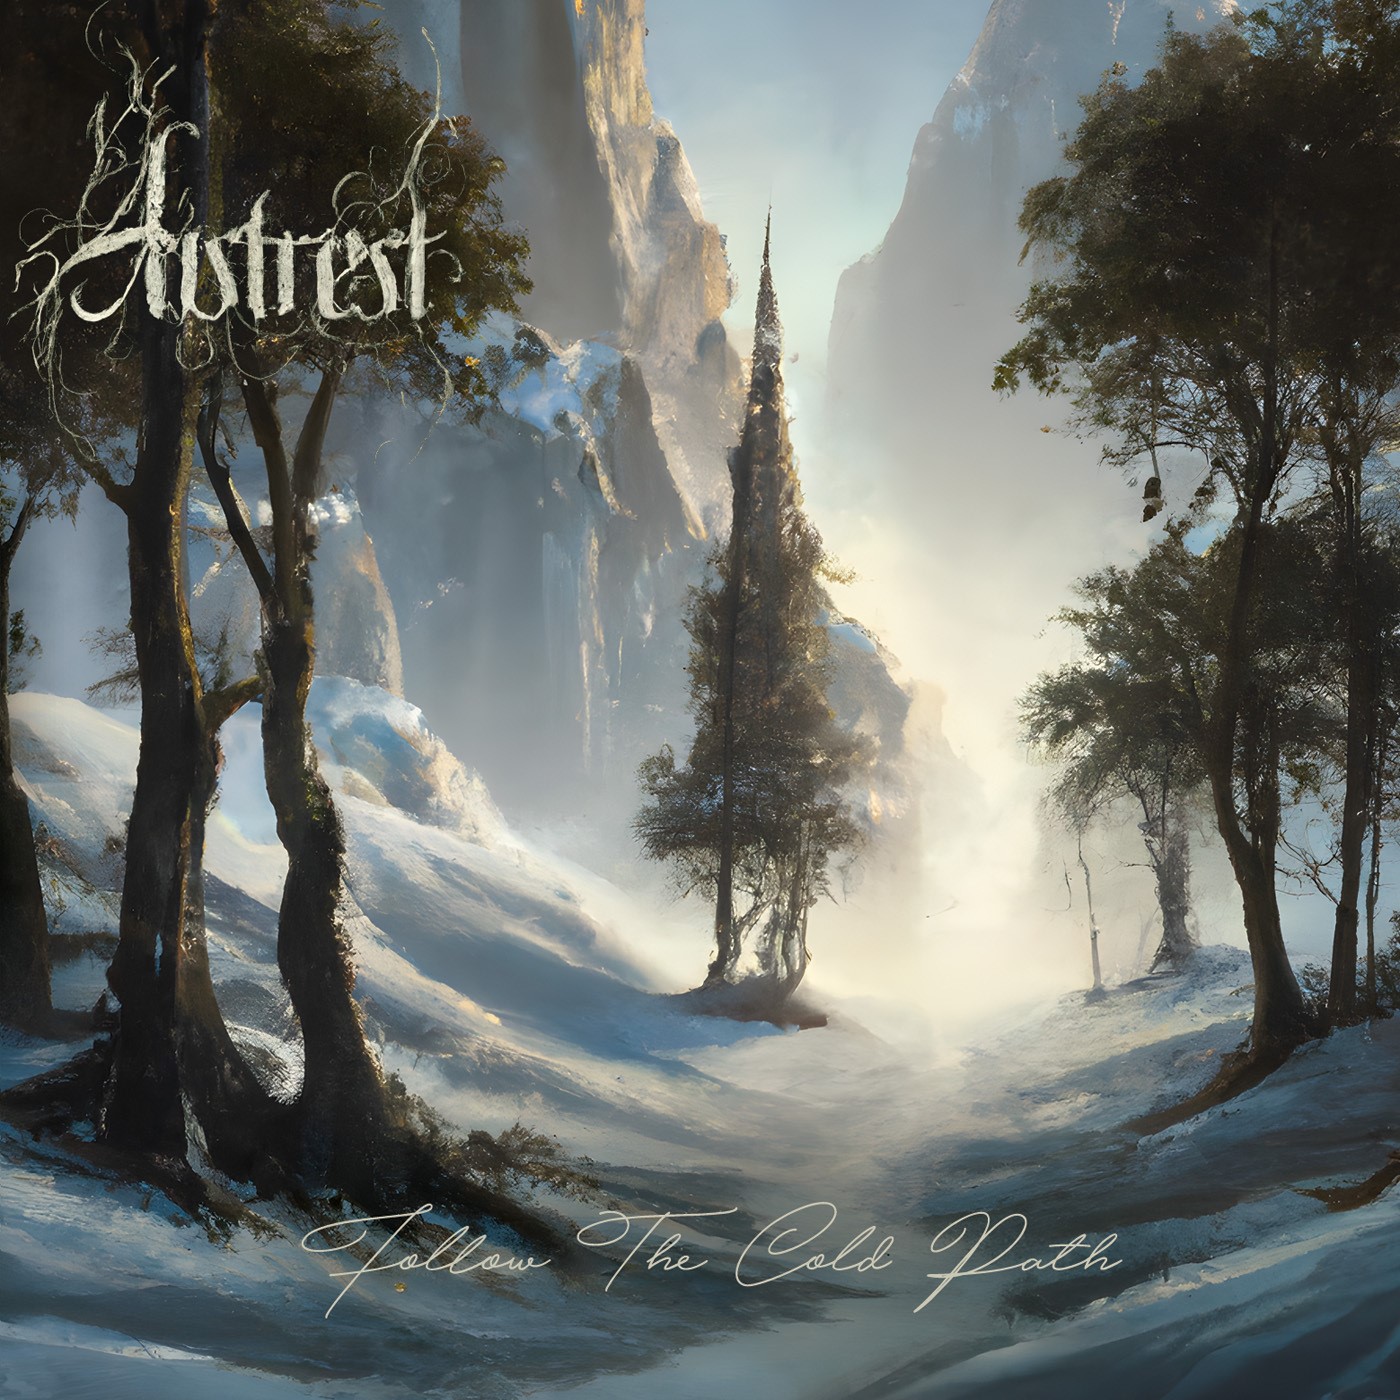 Autrest – Follow the Cold Path